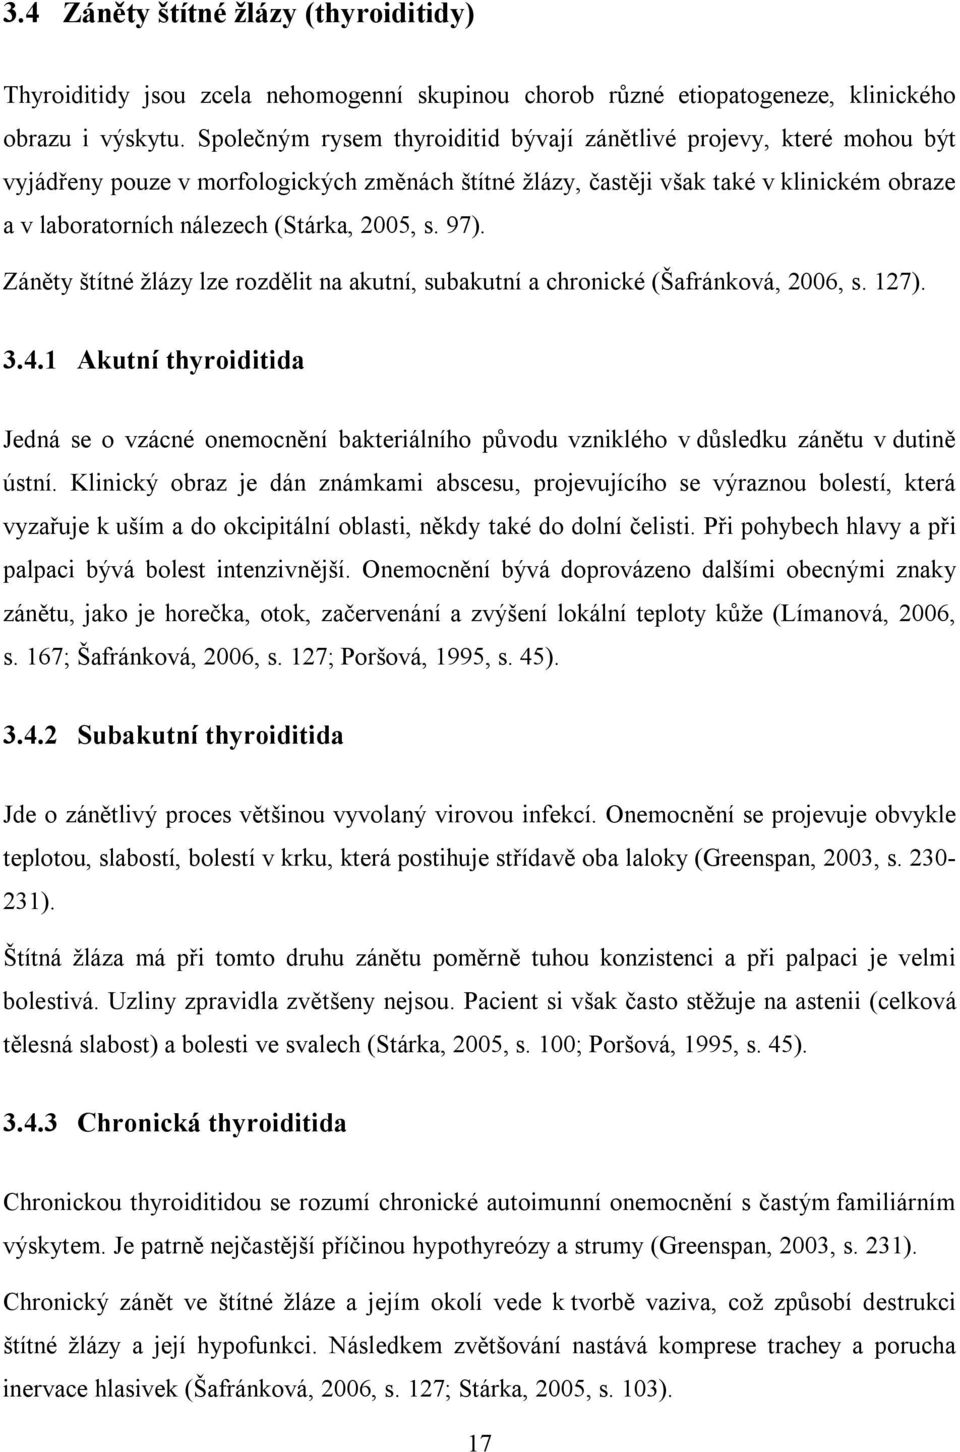 2005, s. 97). Záněty štítné žlázy lze rozdělit na akutní, subakutní a chronické (Šafránková, 2006, s. 127). 3.4.